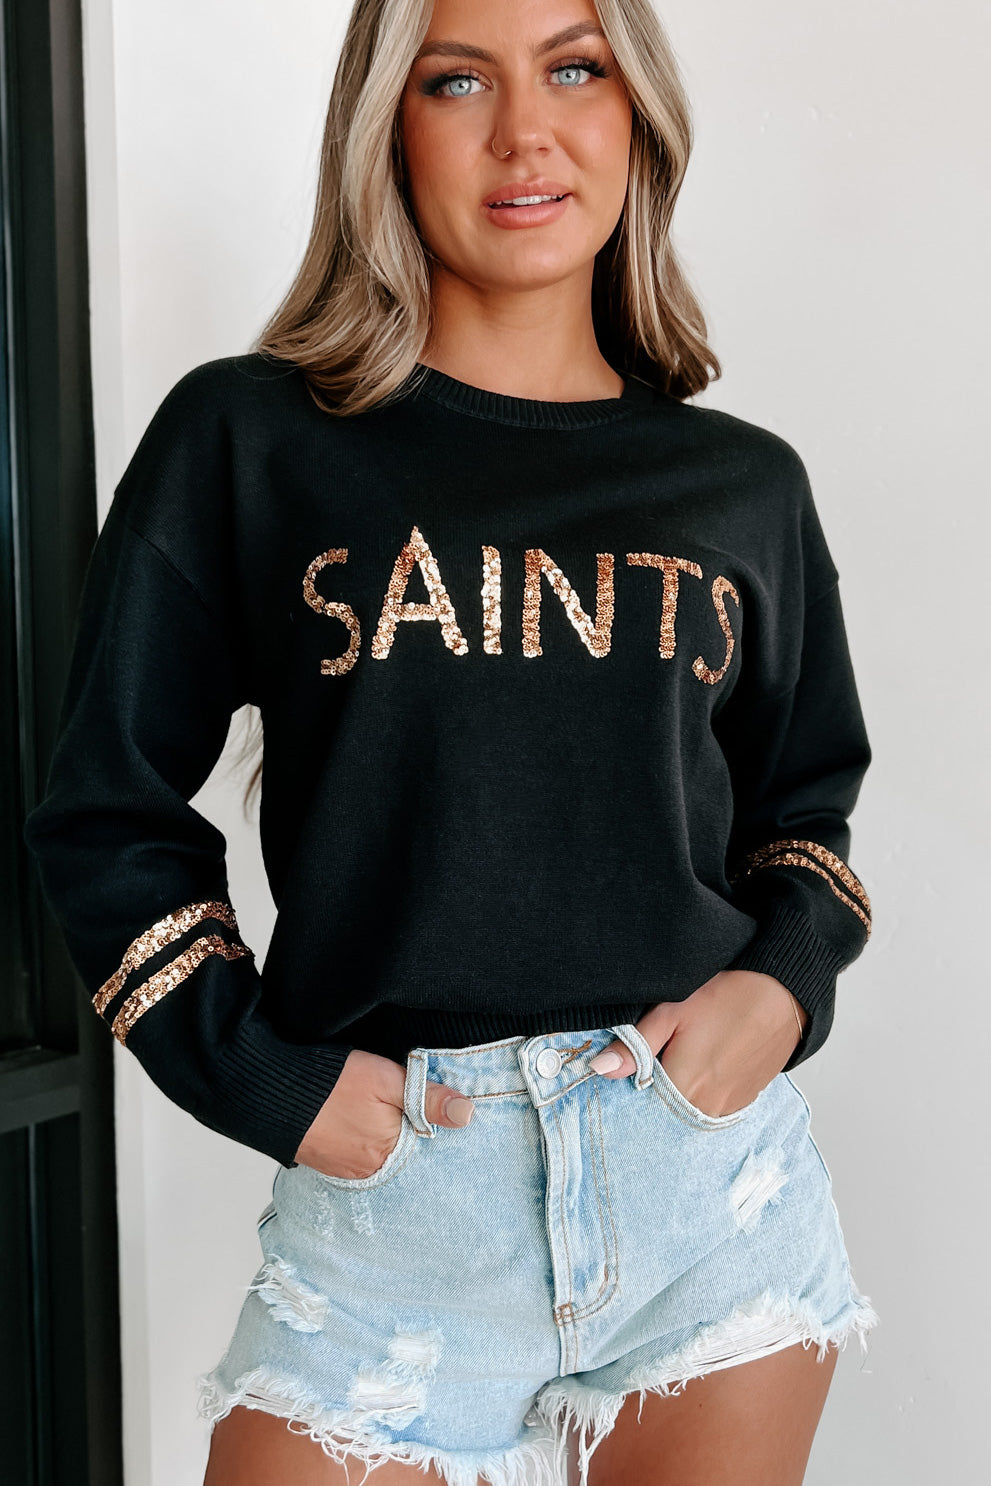 "Saints" Sequin Graphic Sweater (Black/Gold) - NanaMacs